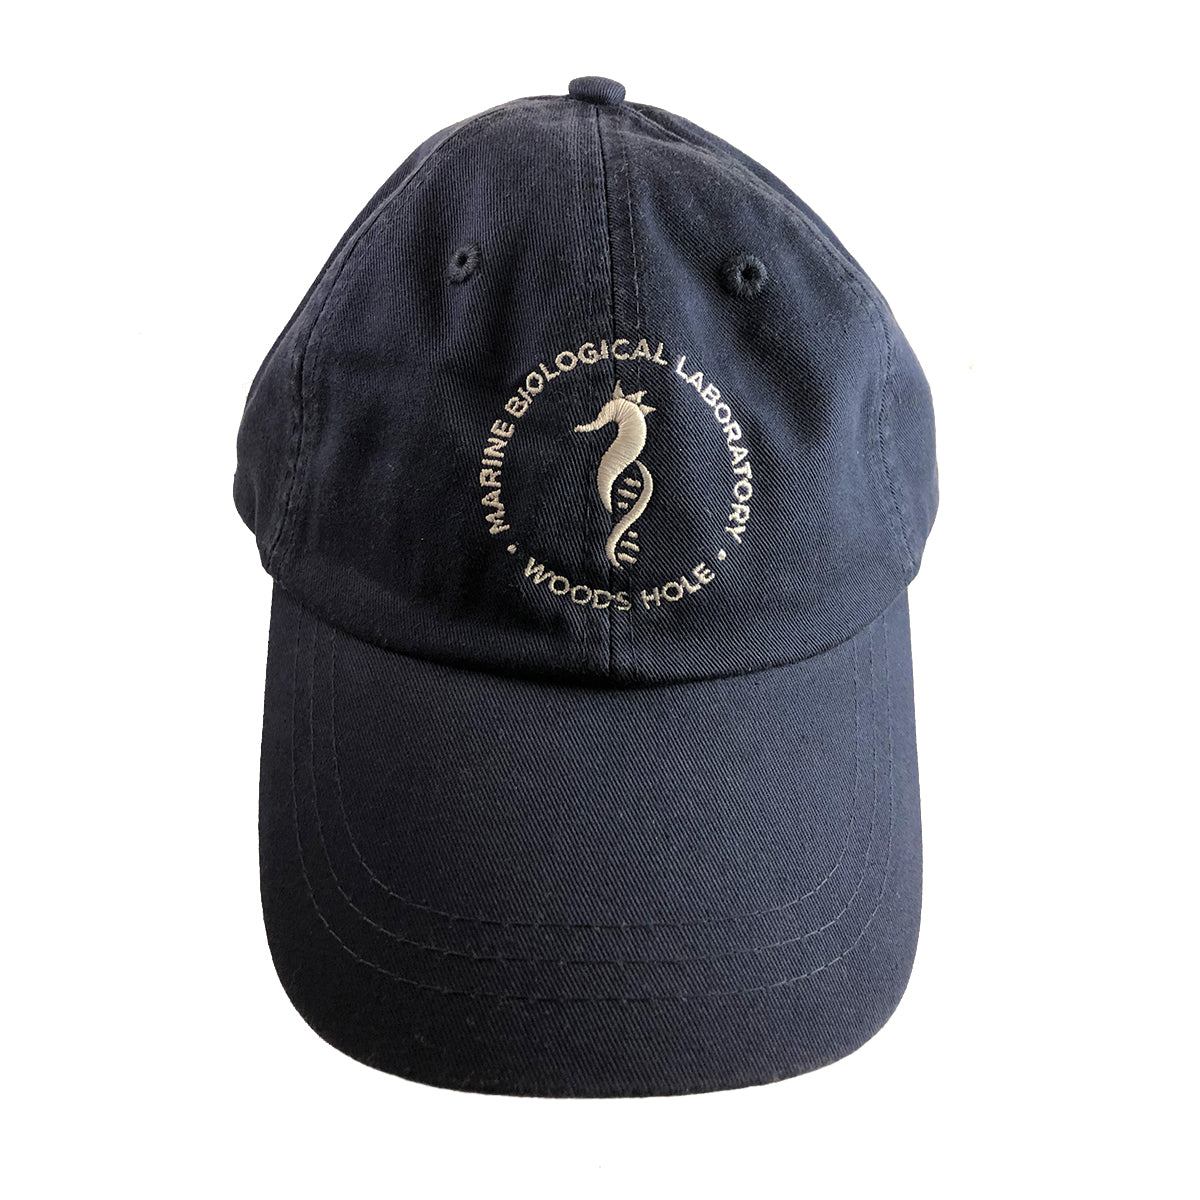 Seahorse Logo Cap